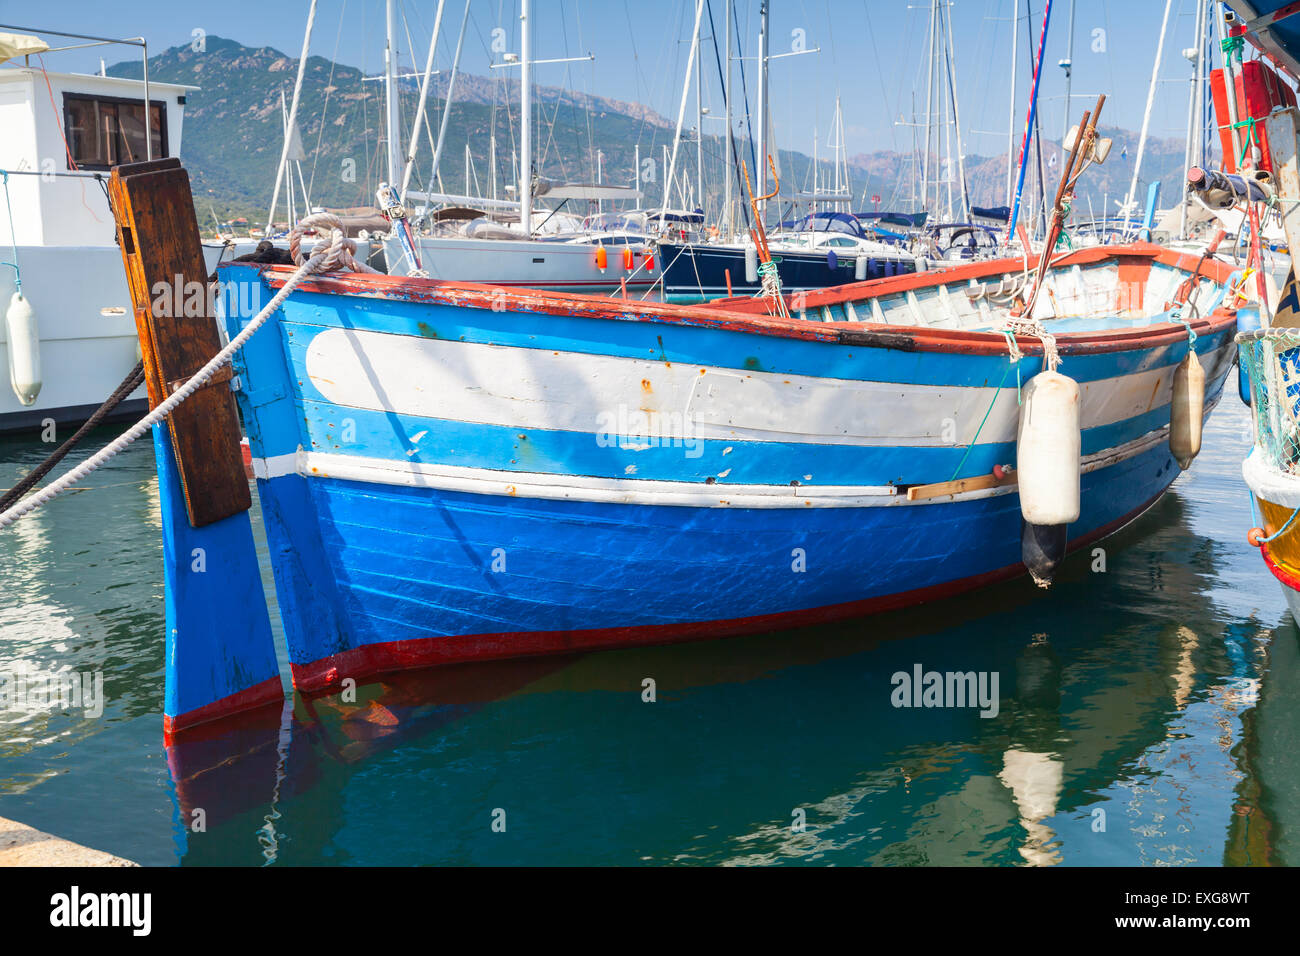 Bleu et blanc petit bateau de pêche en bois amarré dans la ville de Propriano, Corse, France Banque D'Images